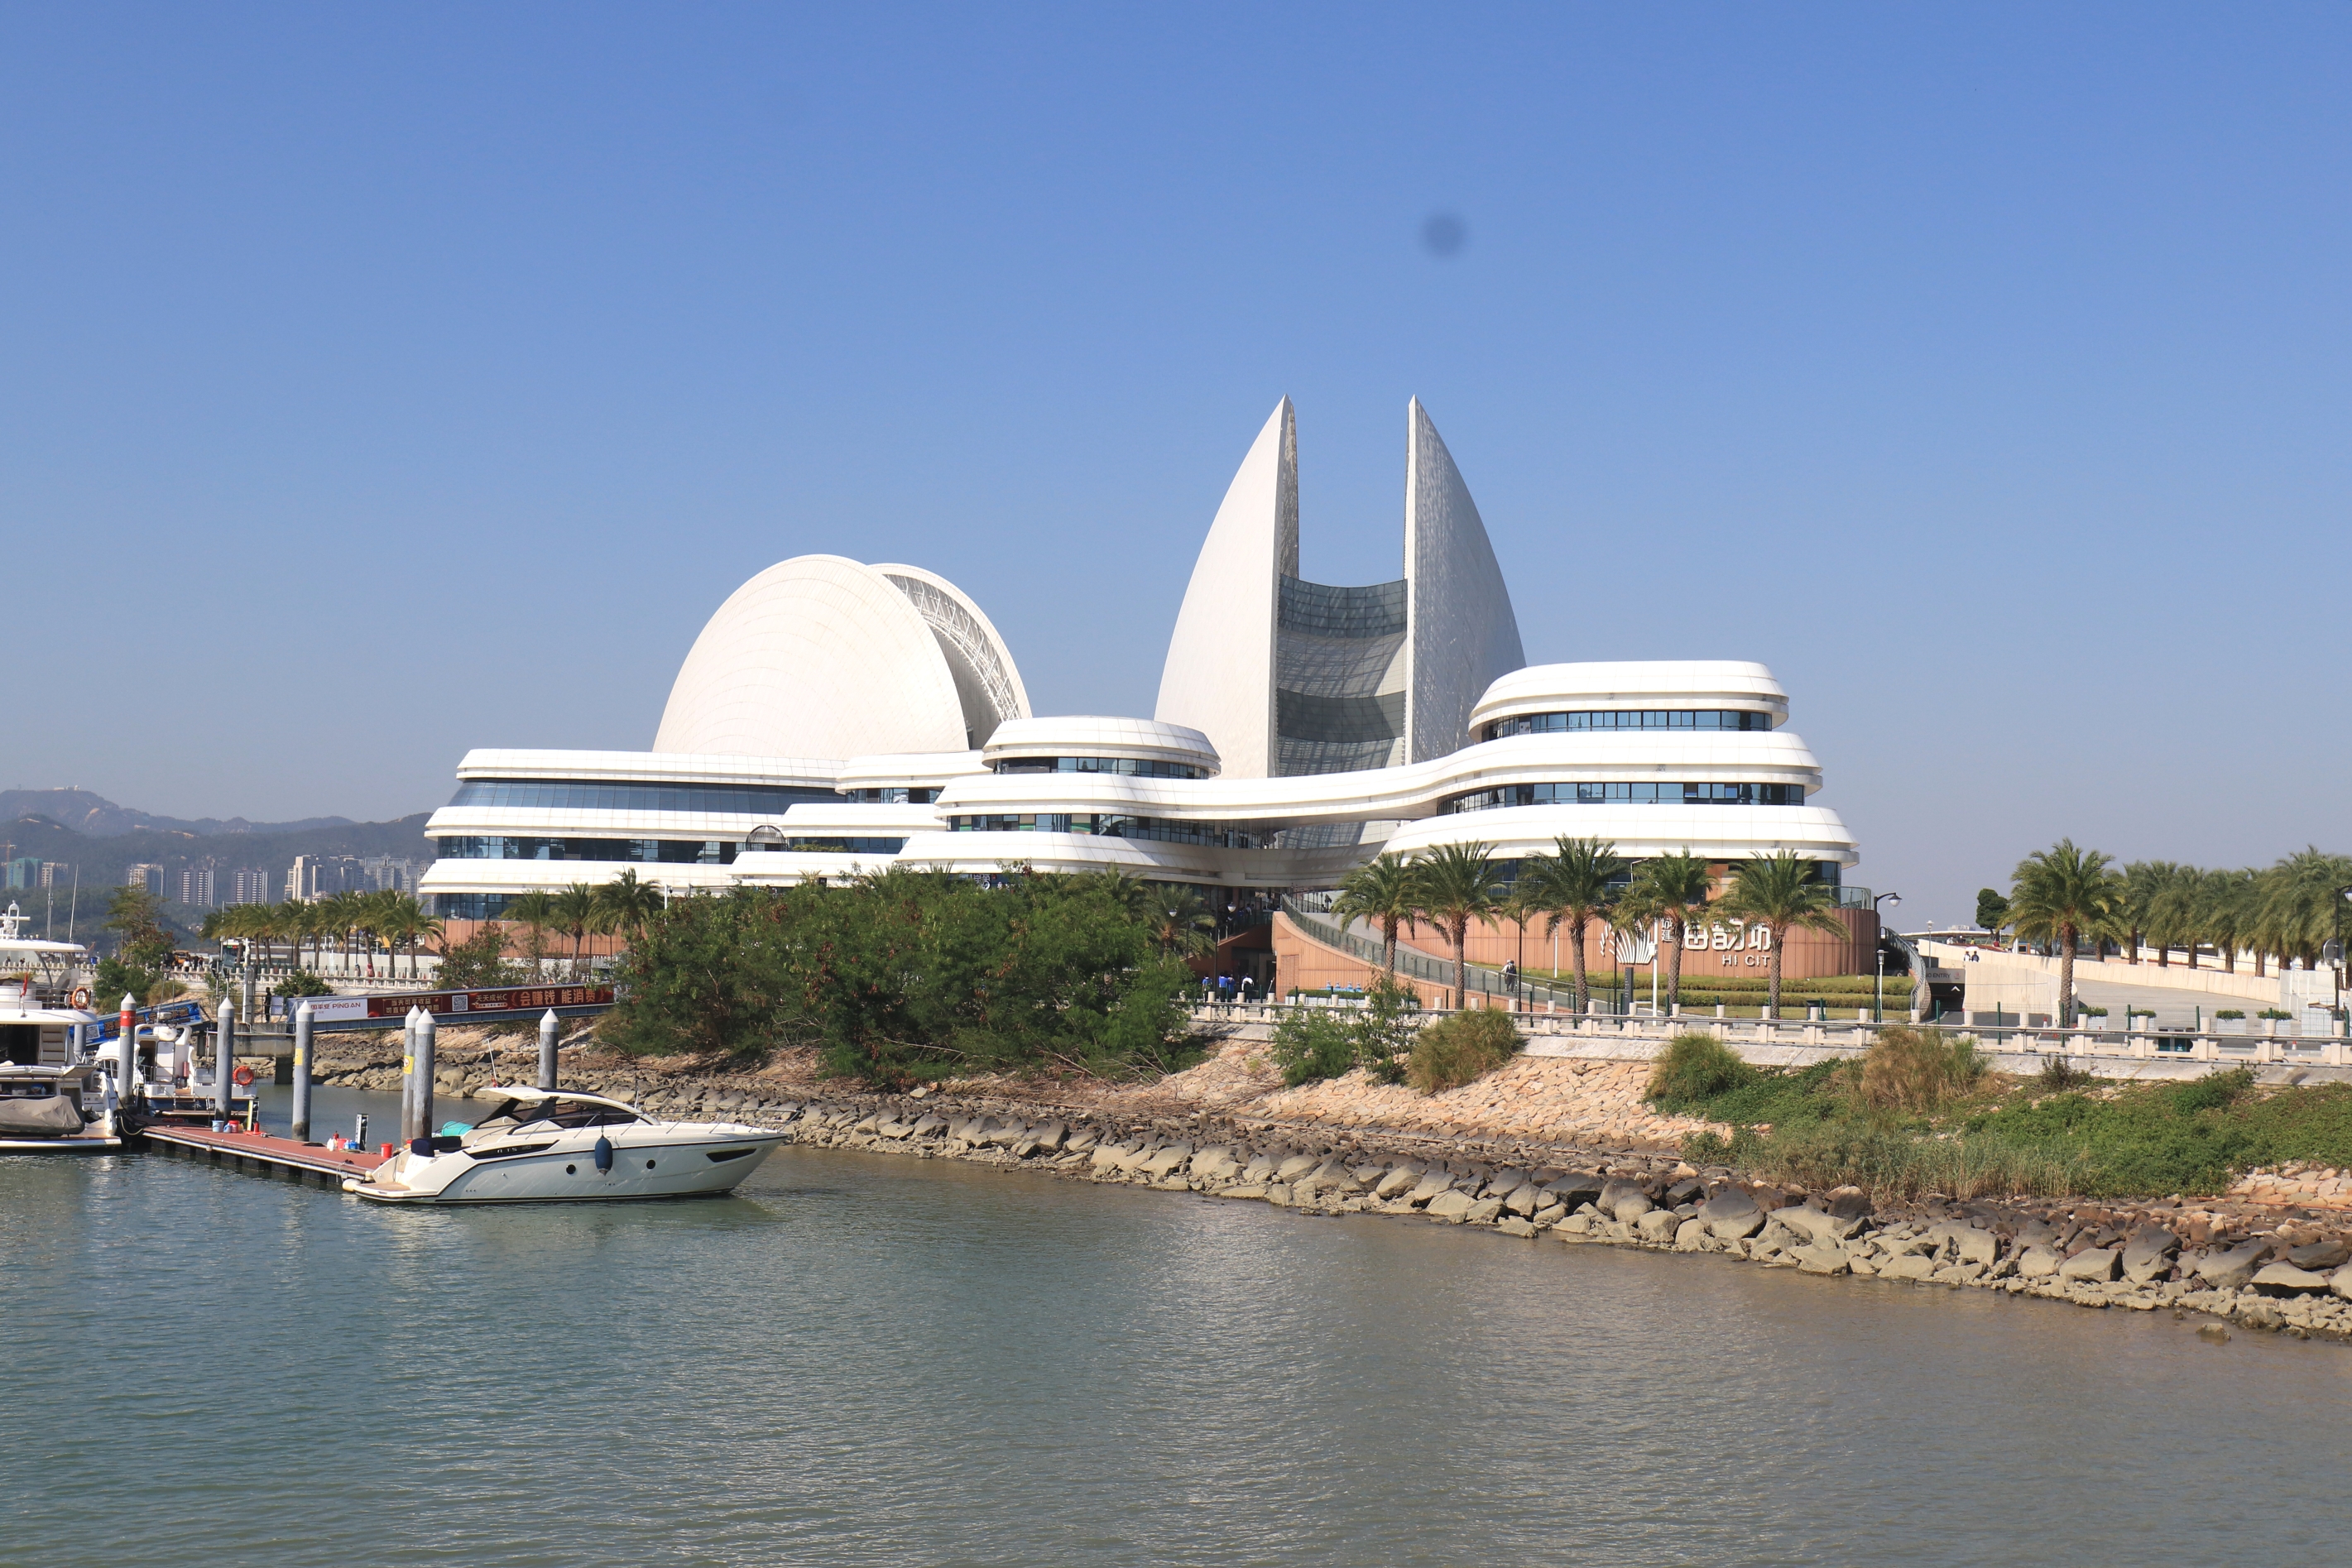 珠海大剧院位于珠海情侣路野狸岛海滨,是中国唯一建设在海岛上的歌剧